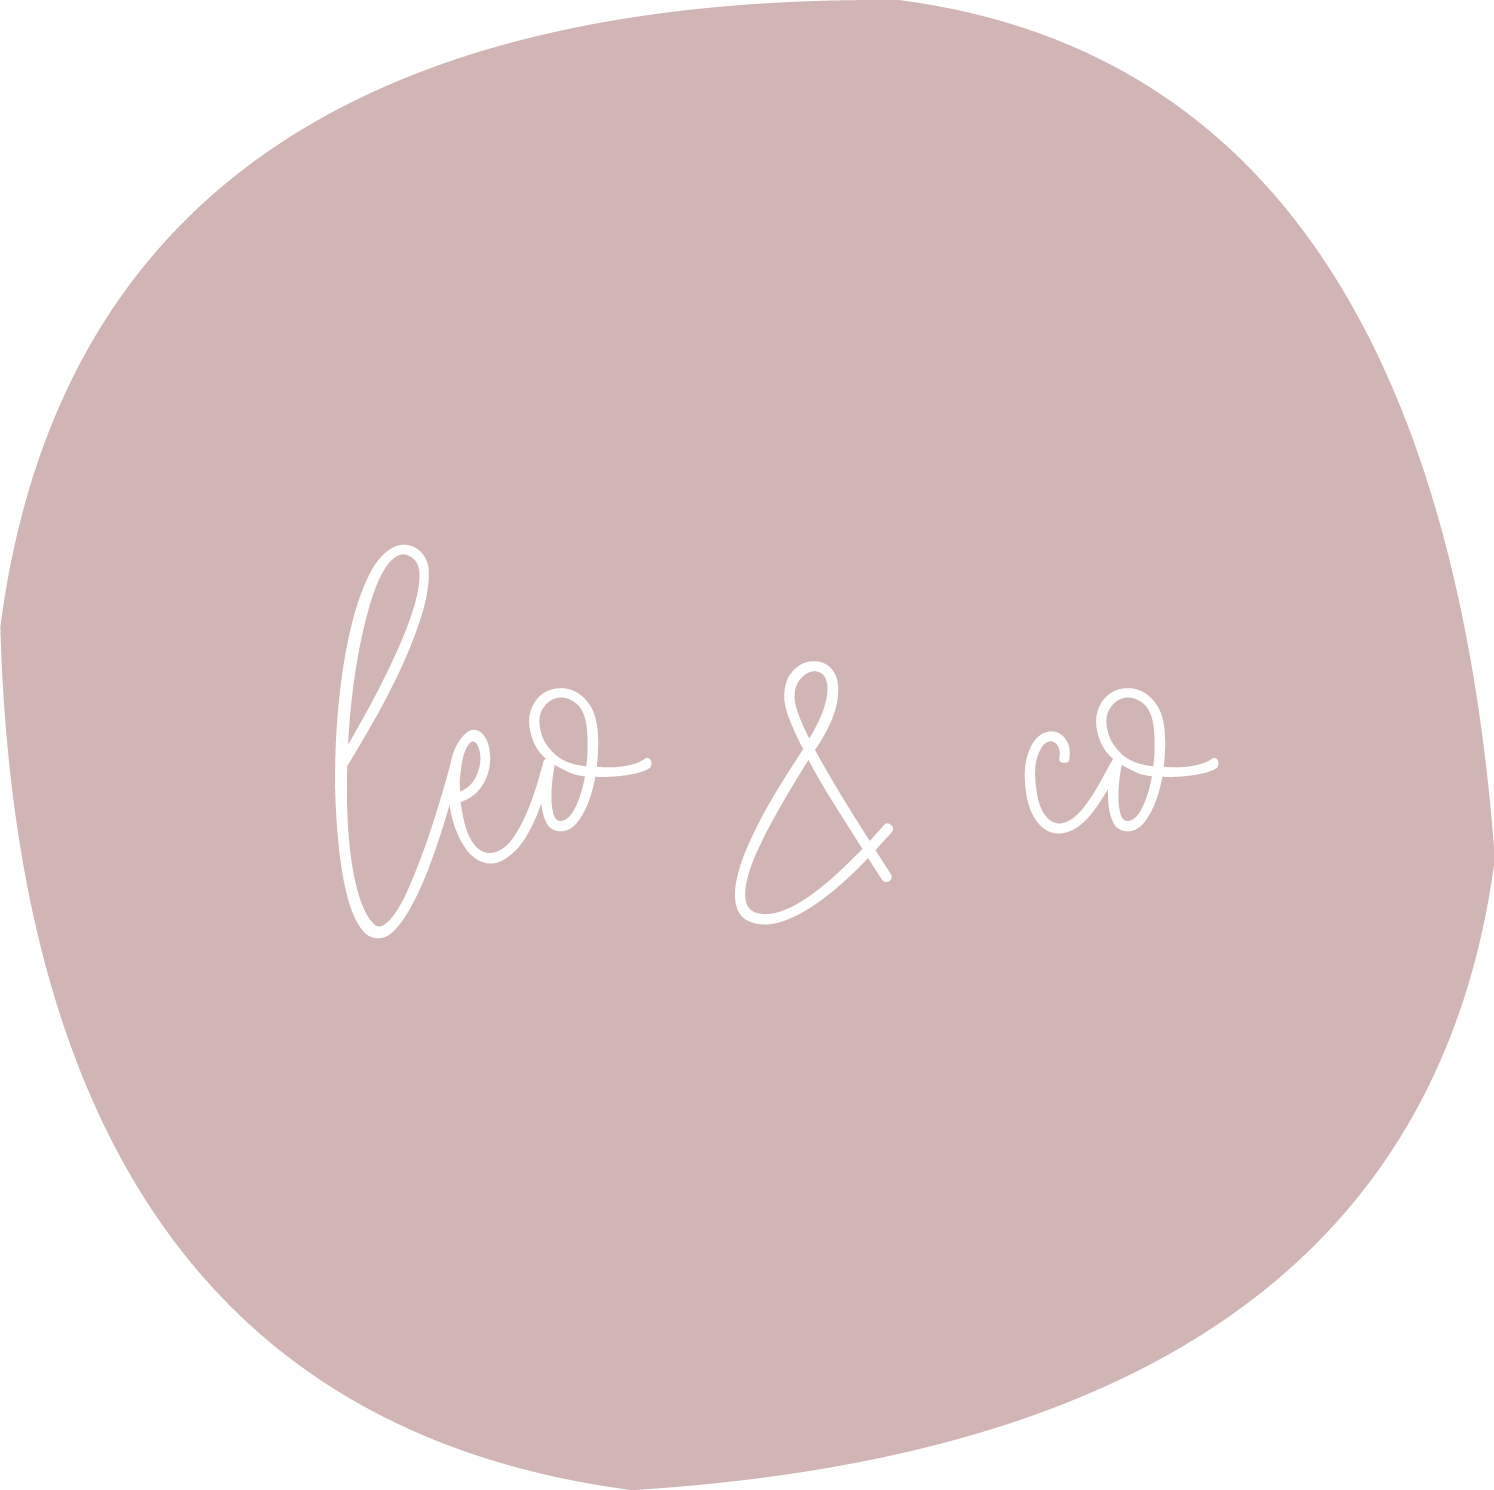 Leo & Co